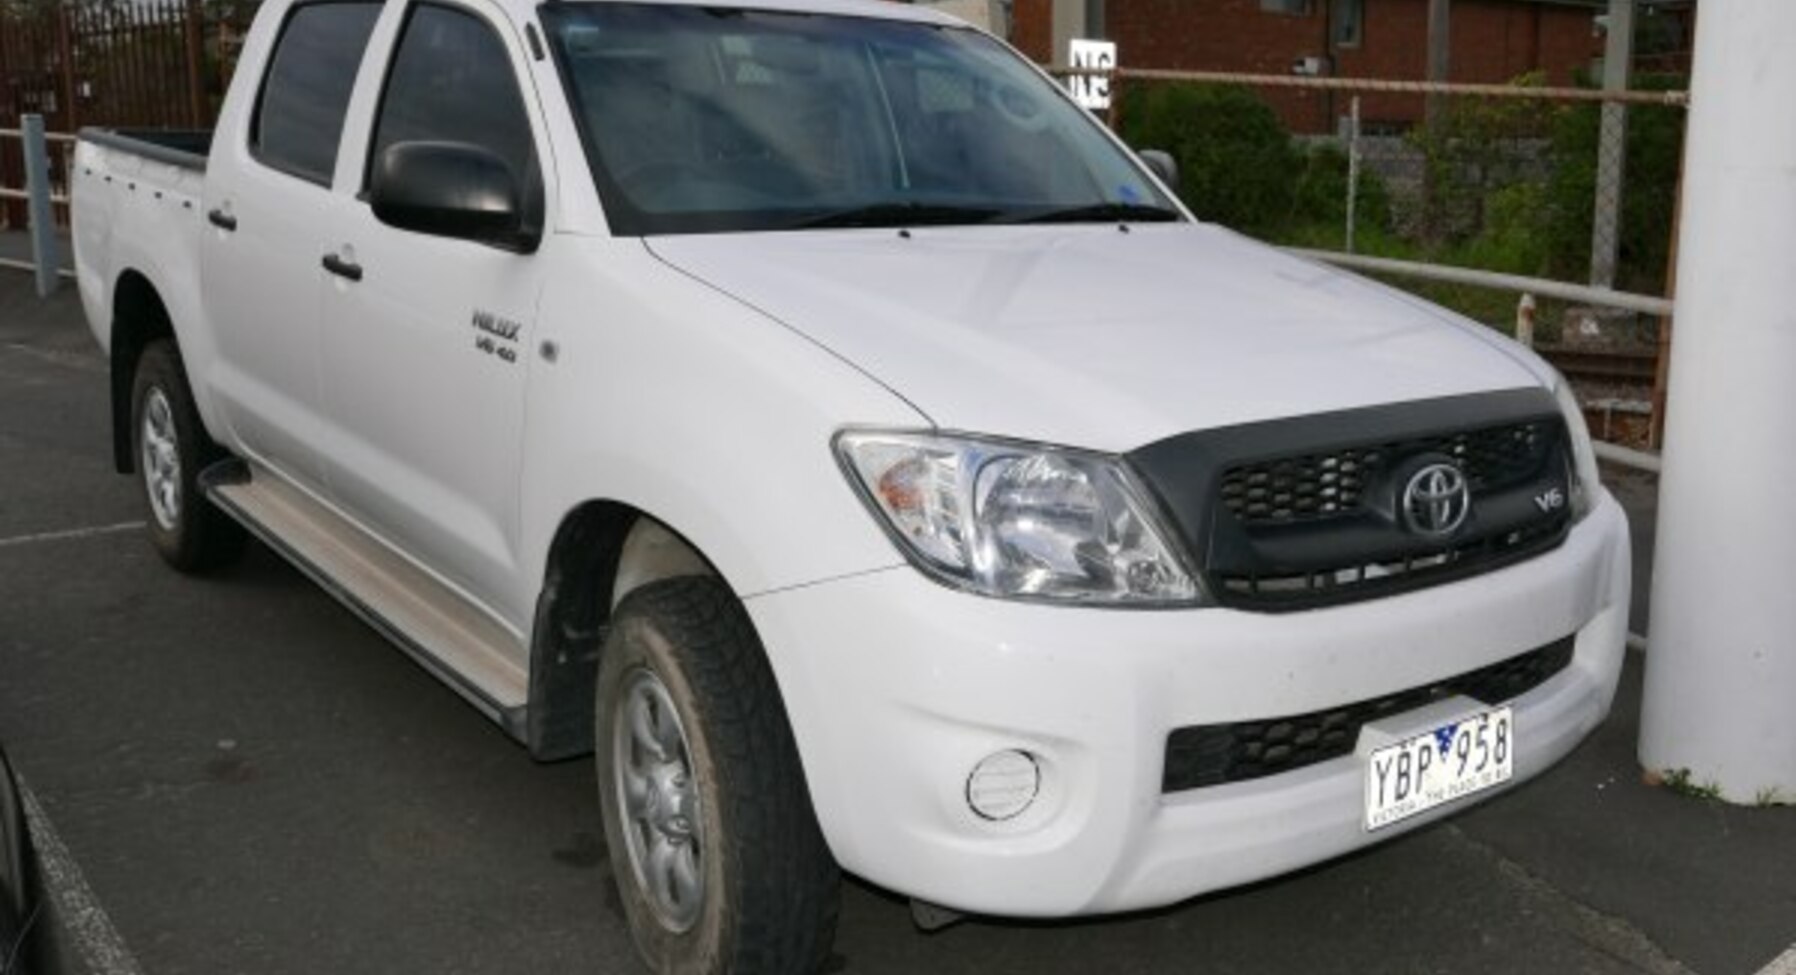 Toyota Hilux Double Cab VII (facelift 2008) 2.5 D-4D (120 Hp) 4x4 2008, 2009 